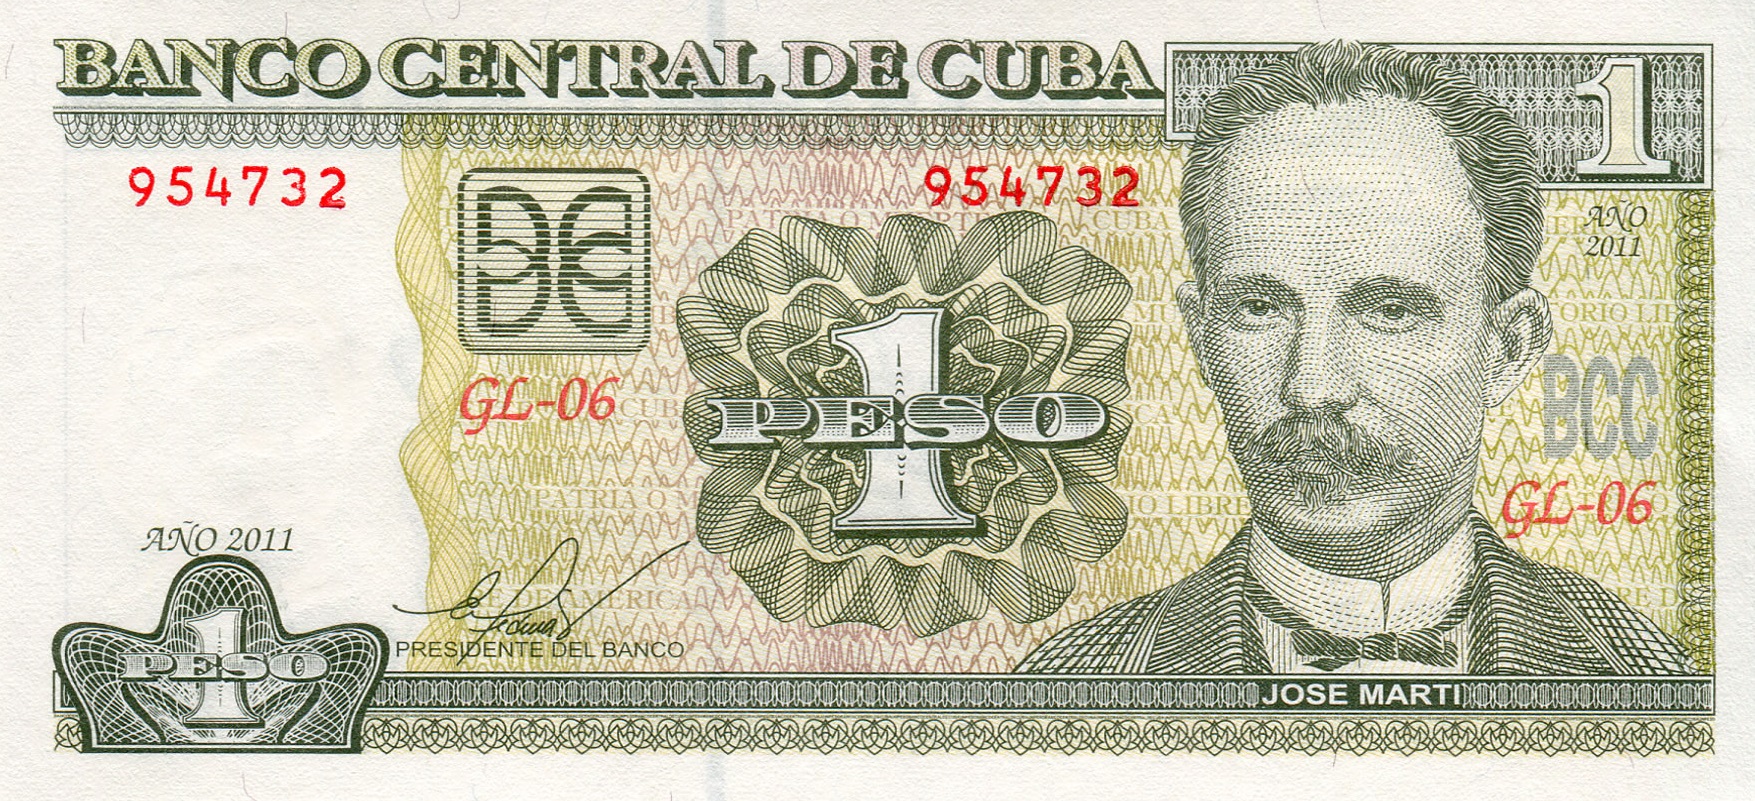 ¿Qué se puede comprar en Cuba con un peso cubano?